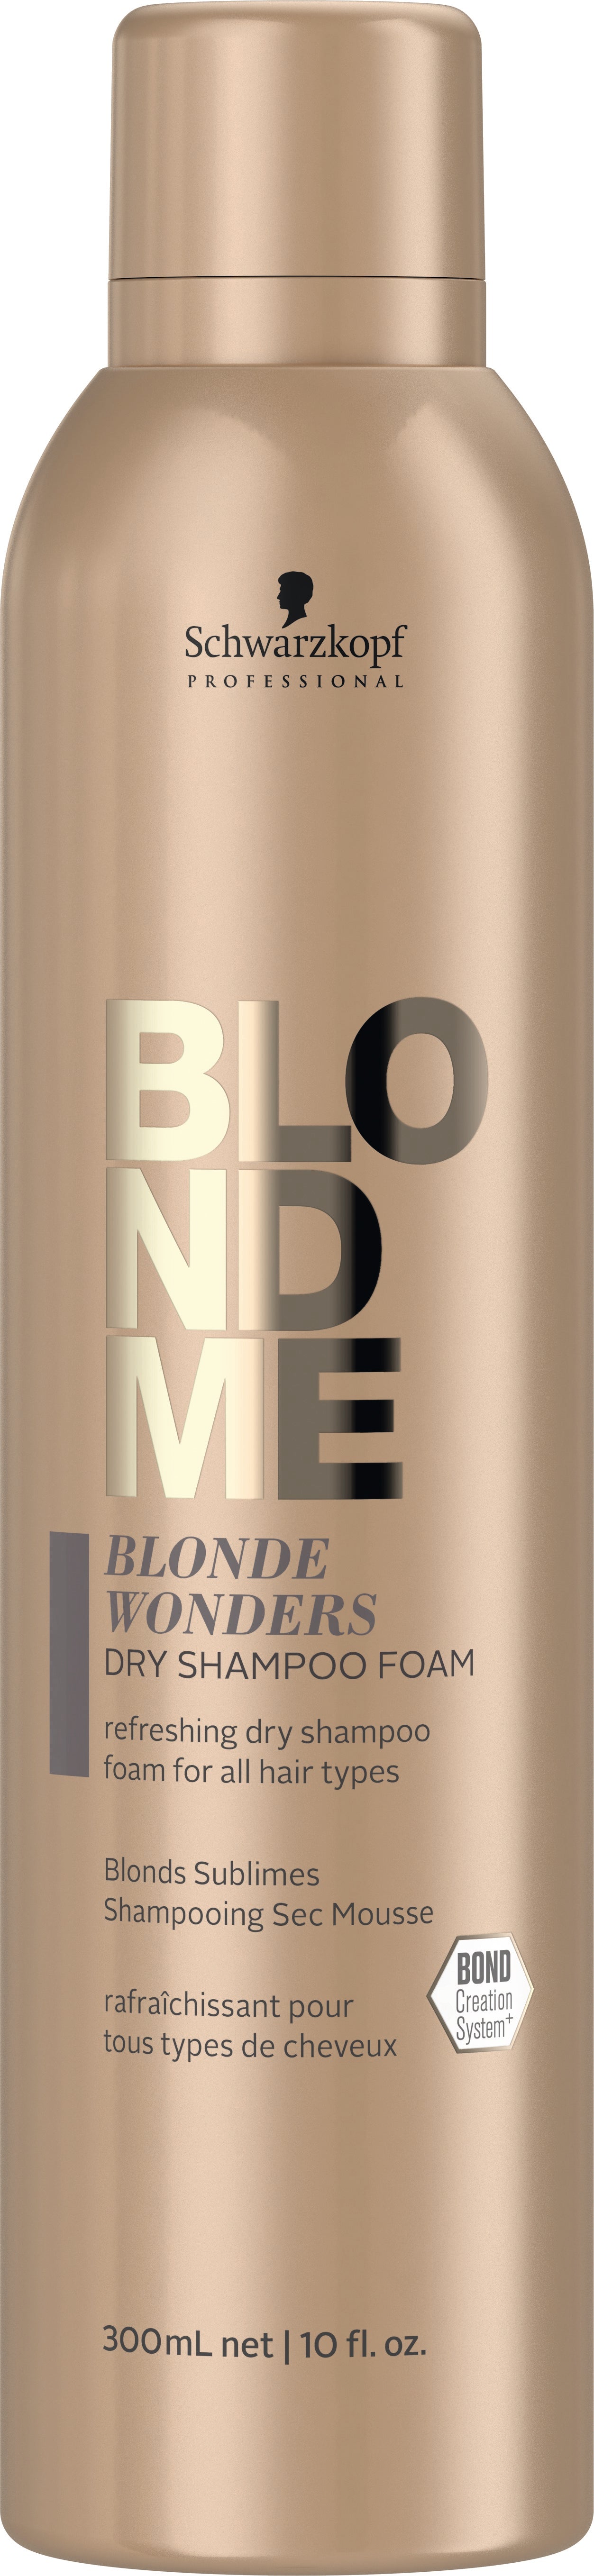 høj vision laser BlondMe Blonde Wonders Dry Shampoo Foam 300ml - Eds Hair